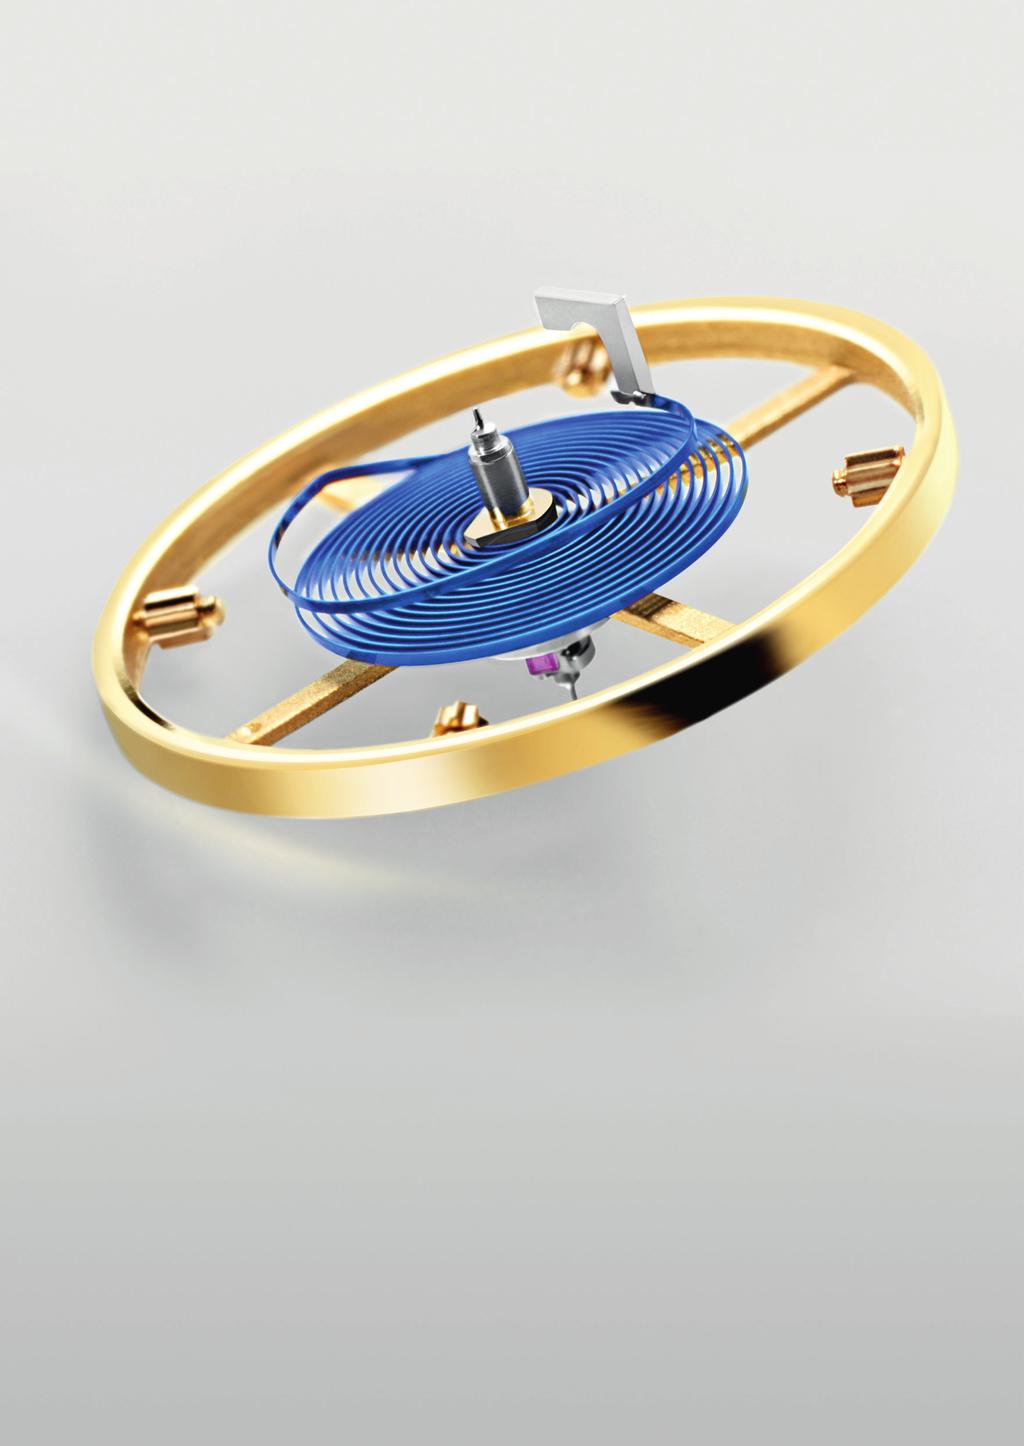 Besondere Merkmale parachrombreguetspirale In einer mechanischen Uhr ist der Oszillator der Taktgeber.